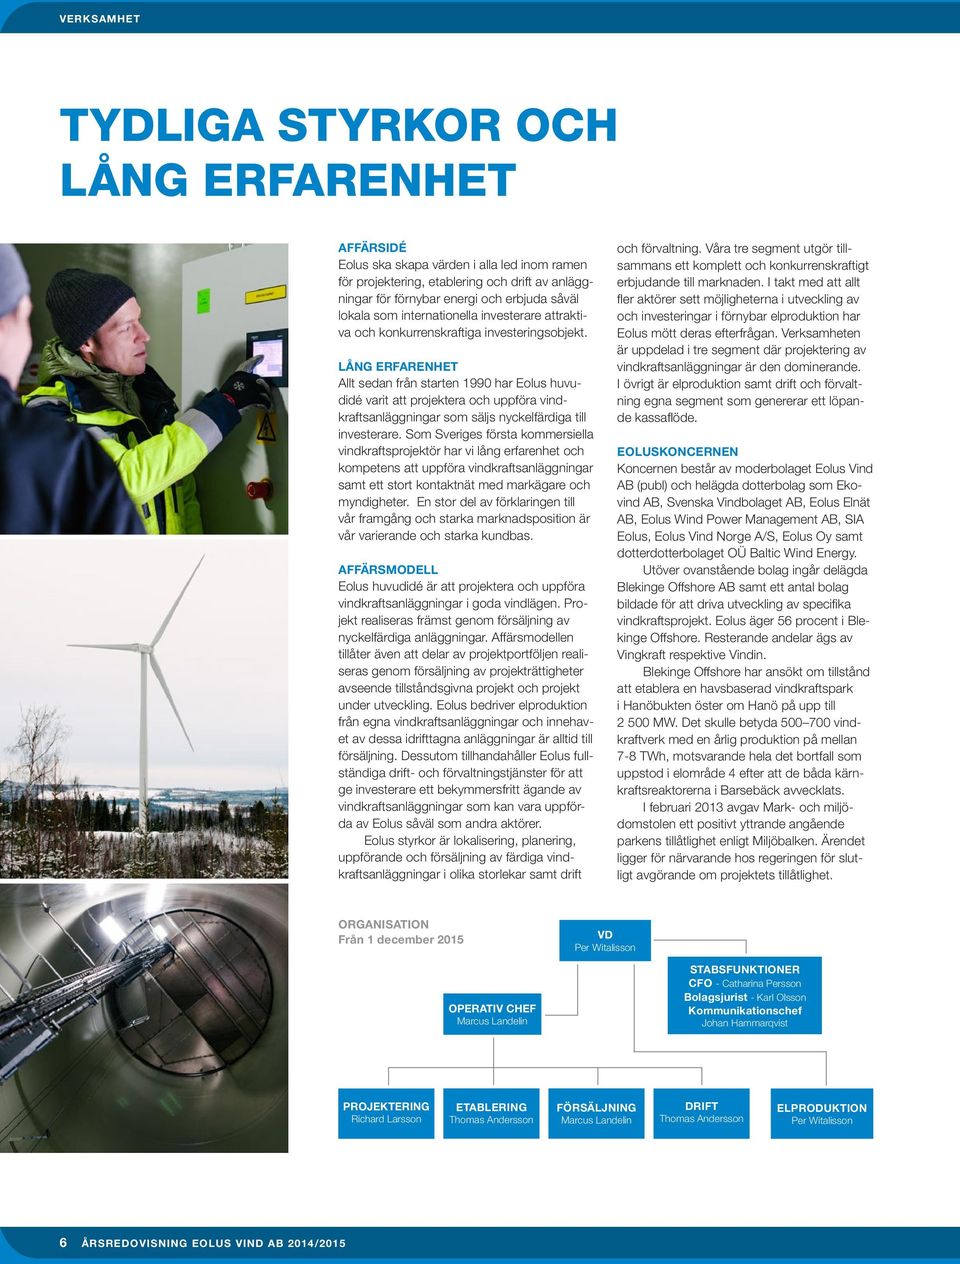 LÅNG ERFARENHET Allt sedan från starten 1990 har Eolus huvudidé varit att projektera och uppföra vindkraftsanläggningar som säljs nyckelfärdiga till investerare.